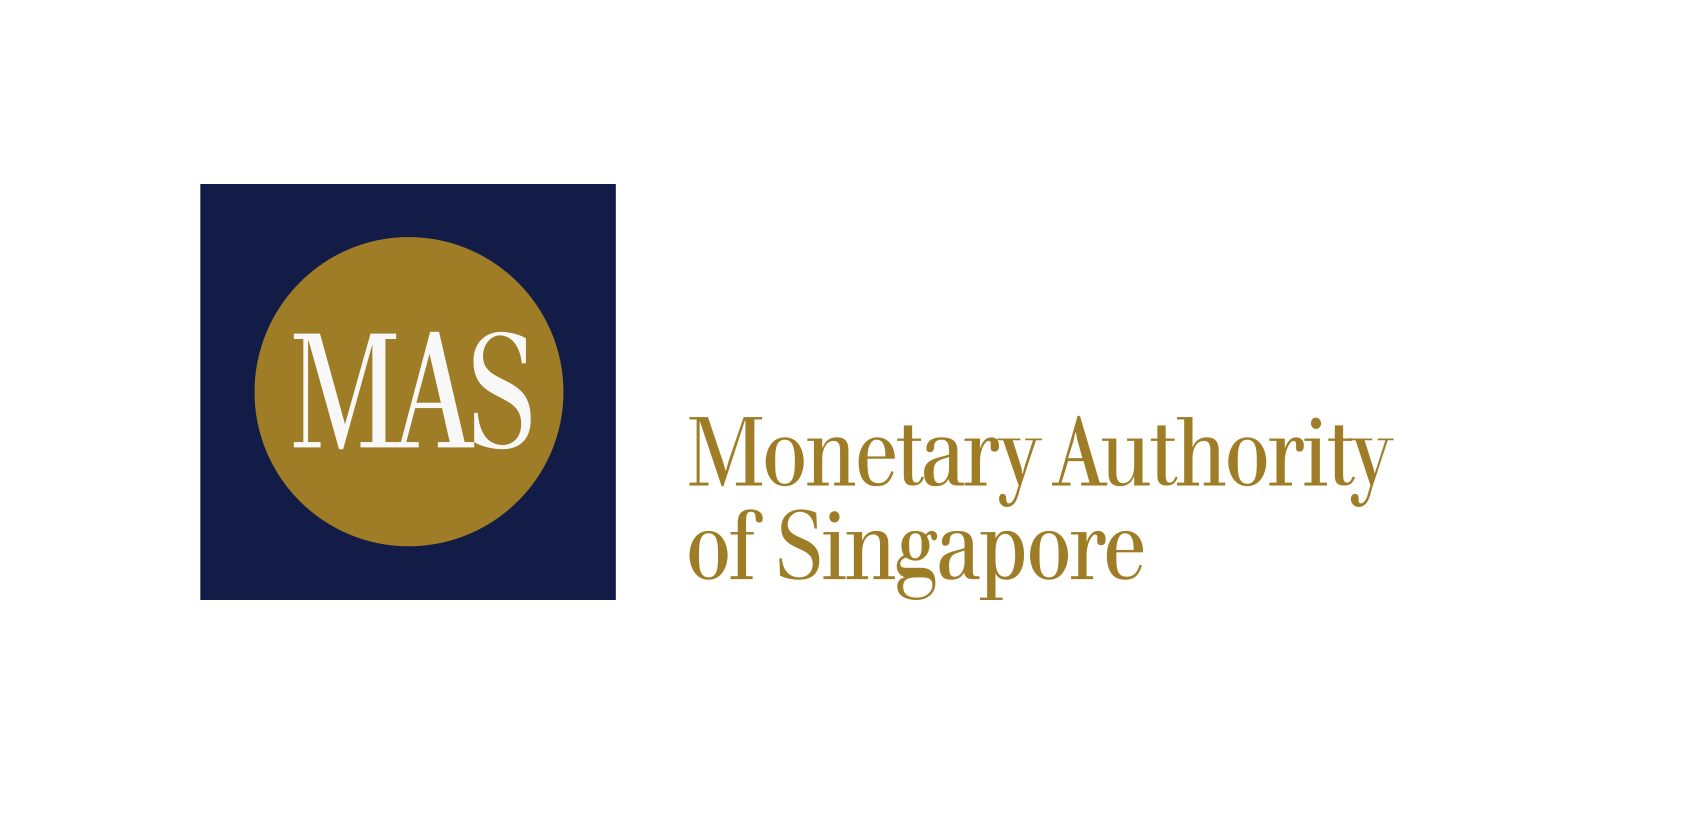 همکاری کشورهای اندونزی، مالزی، فیلیپین، سنگاپور و تایلند  برای اتصال درگاه های پرداخت بانکی در منطقه